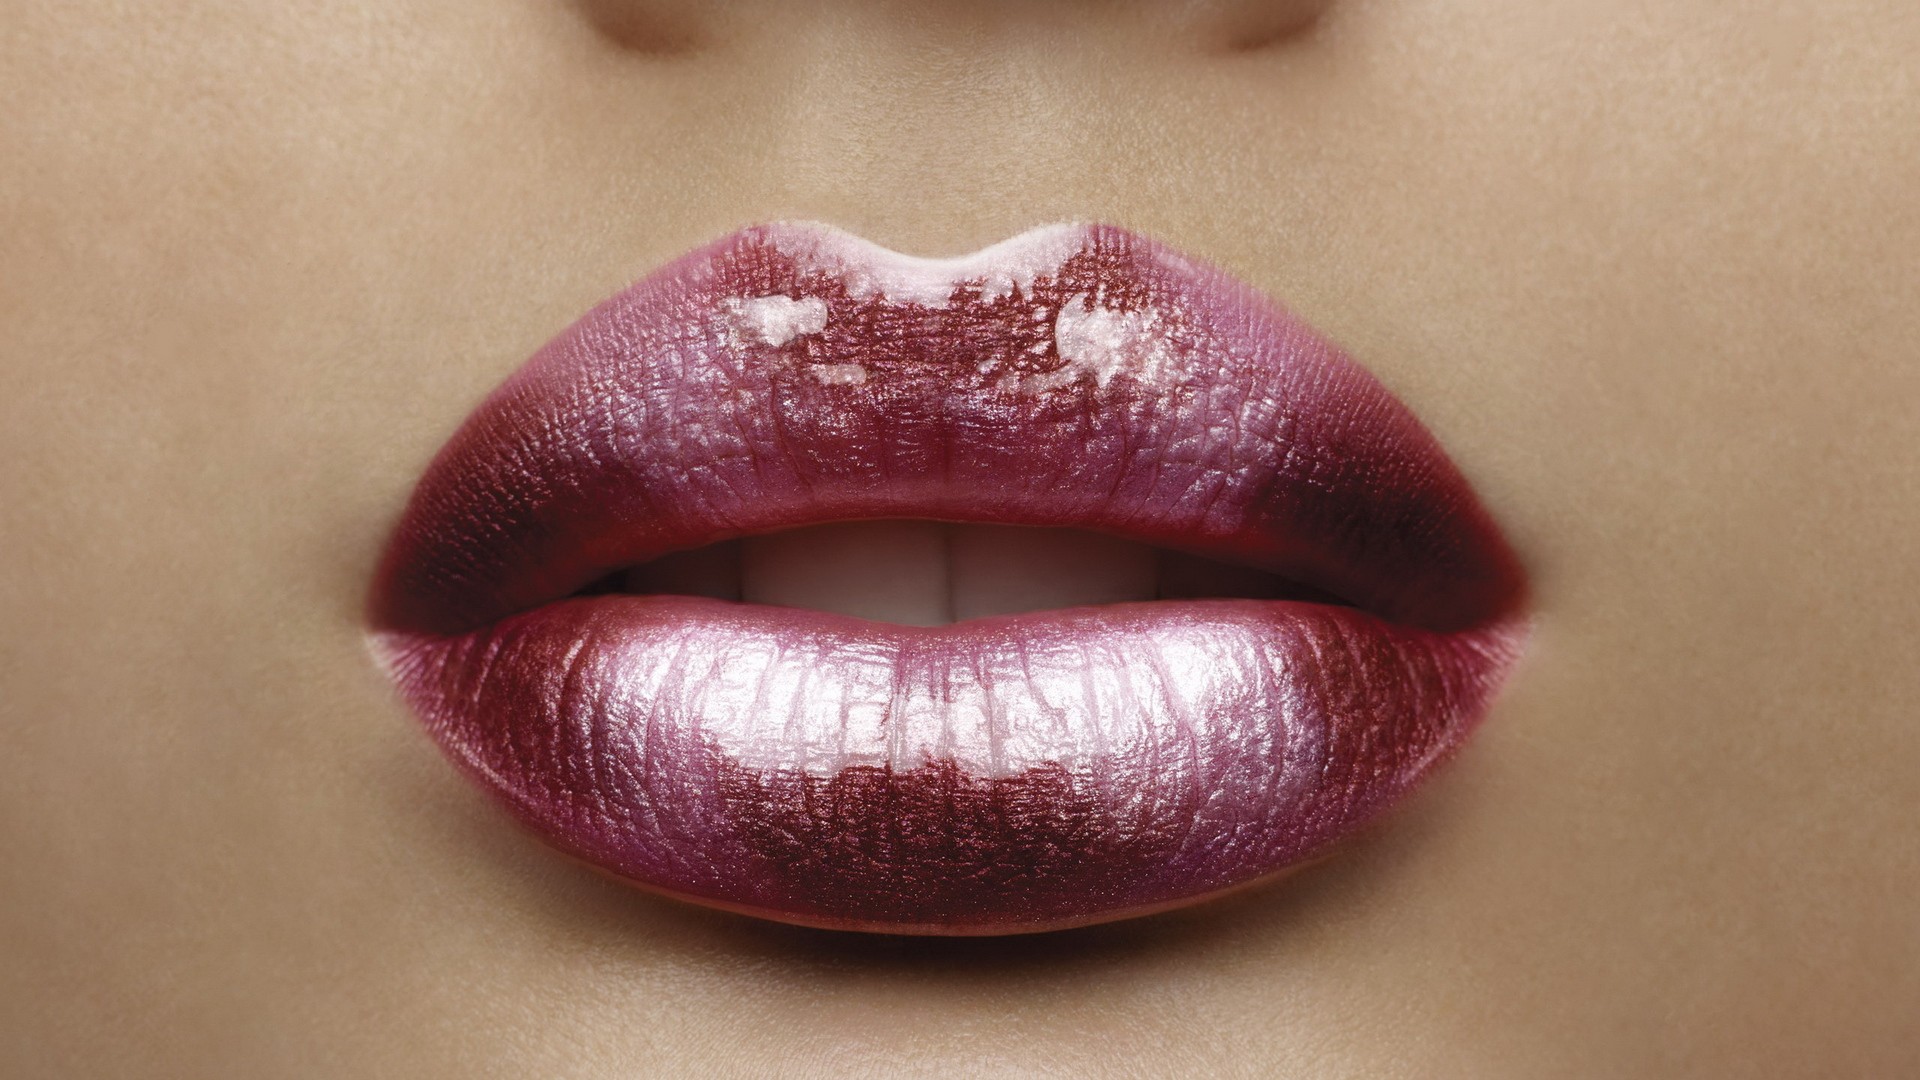 women, models, lips - desktop wallpaper